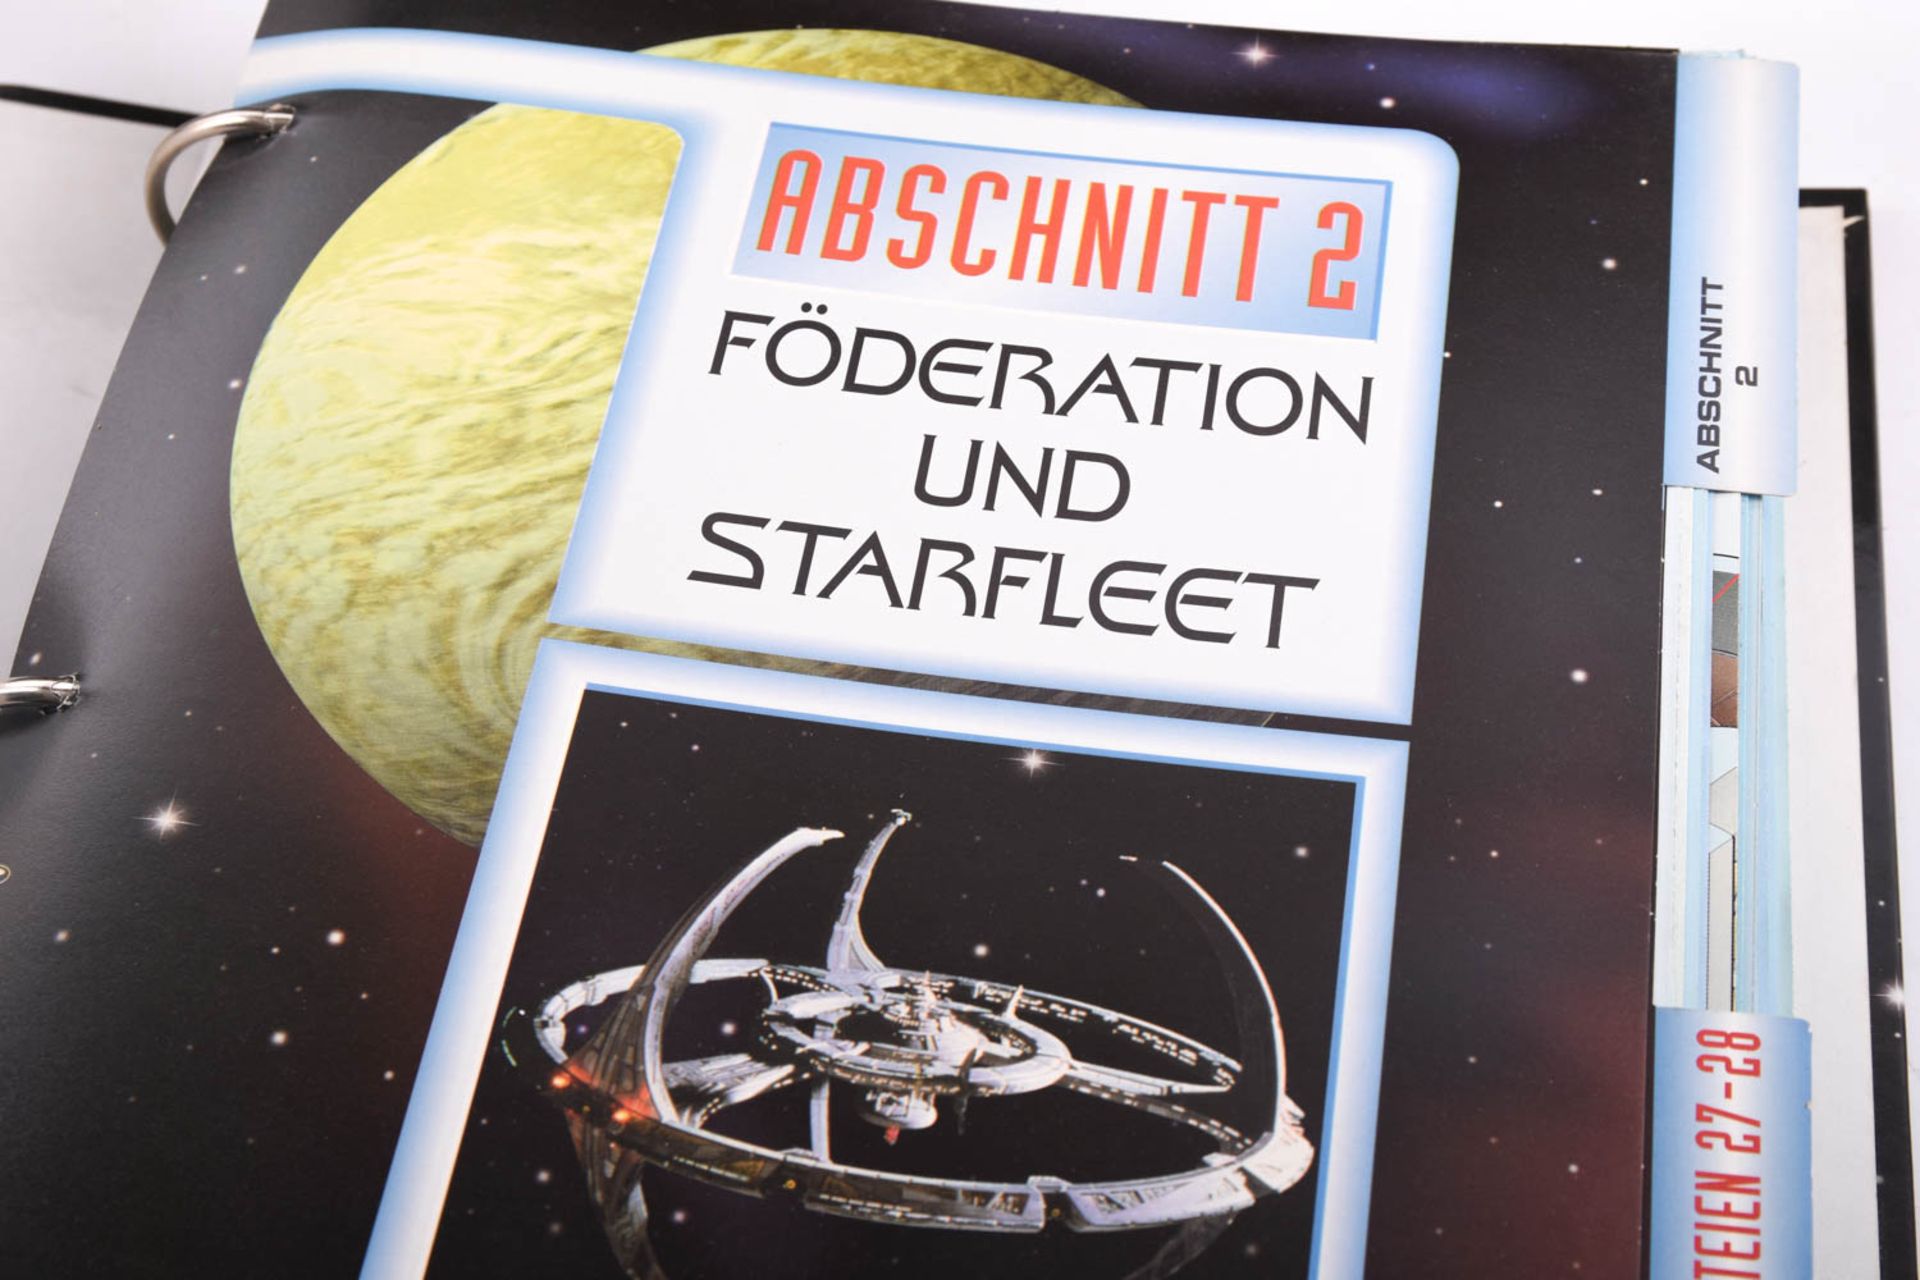 Die offiziellen Star Trek Fakten und Infos, 16 Ordner mit Abschnitt 1 - 7 - Bild 9 aus 18